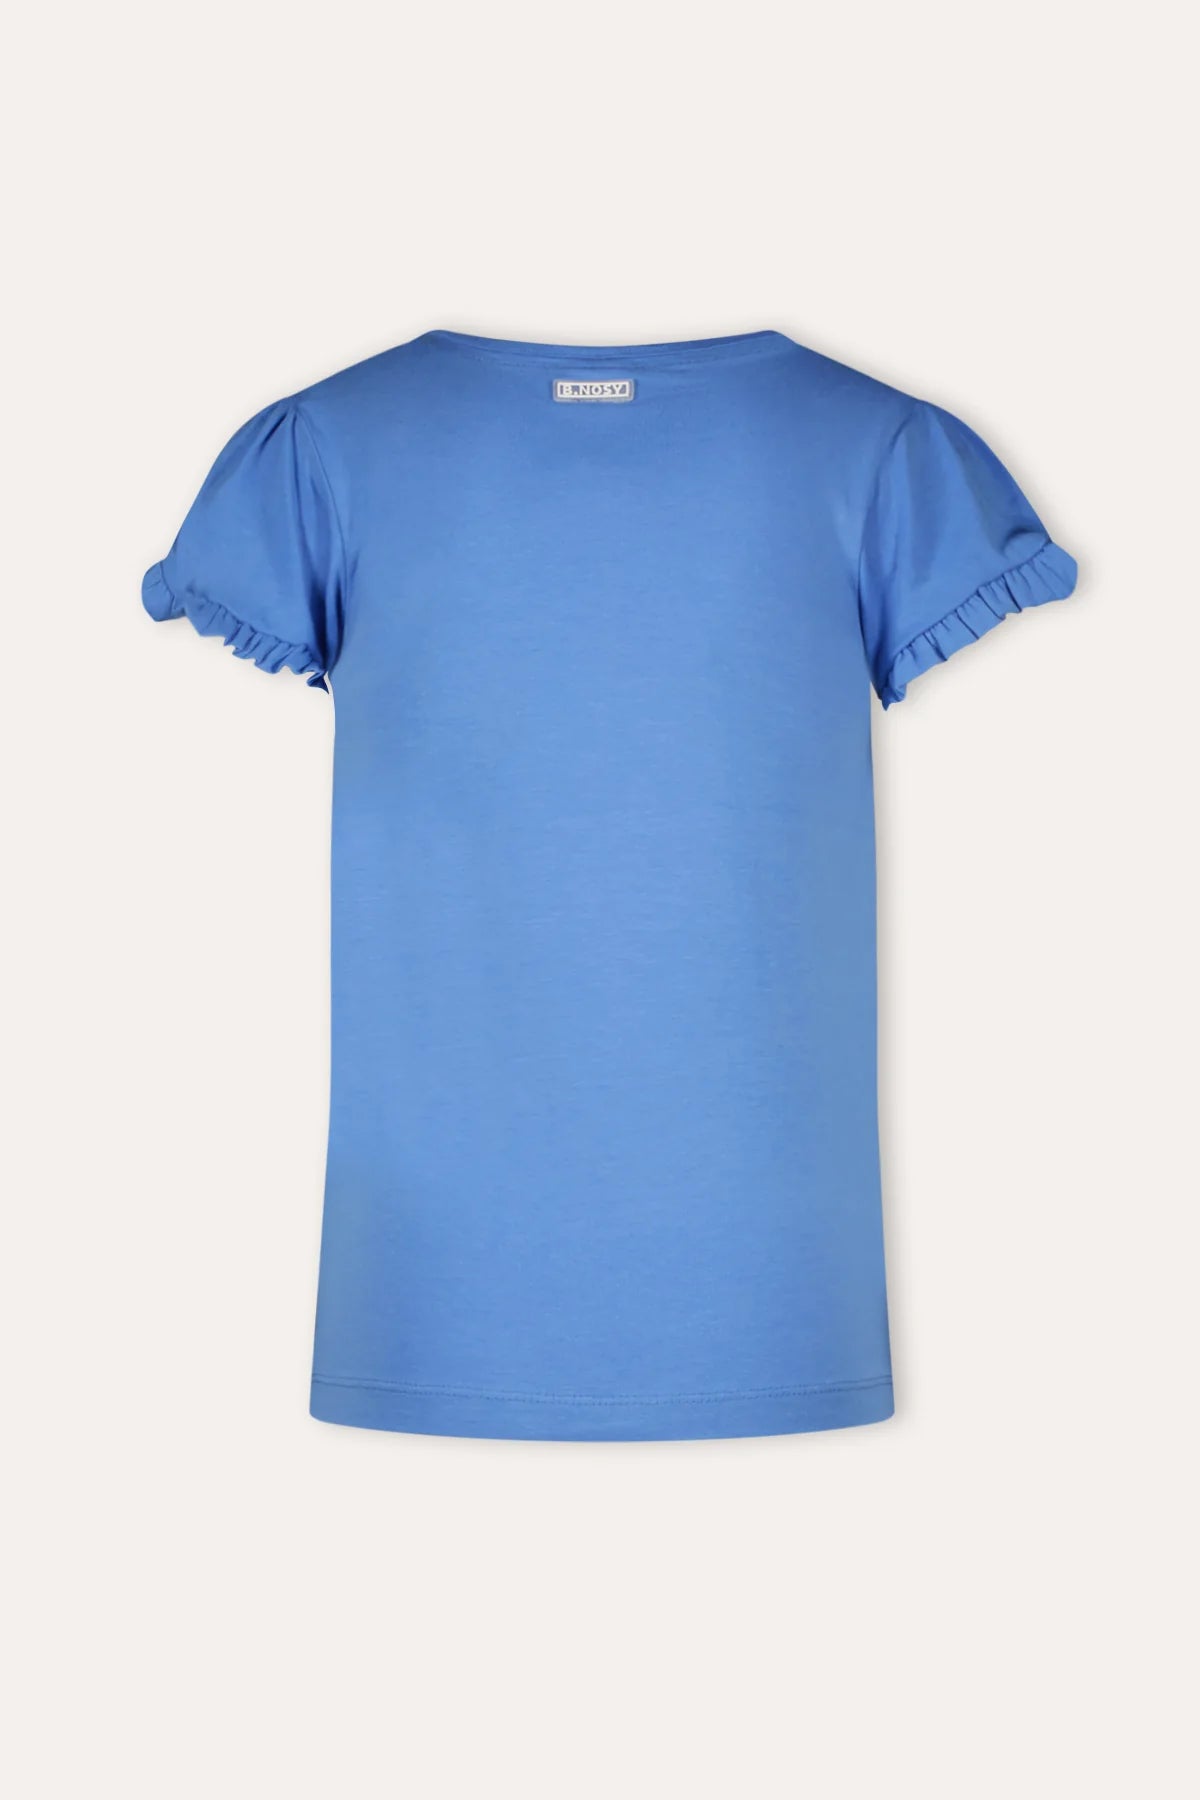 PHILOU T-Shirt blau